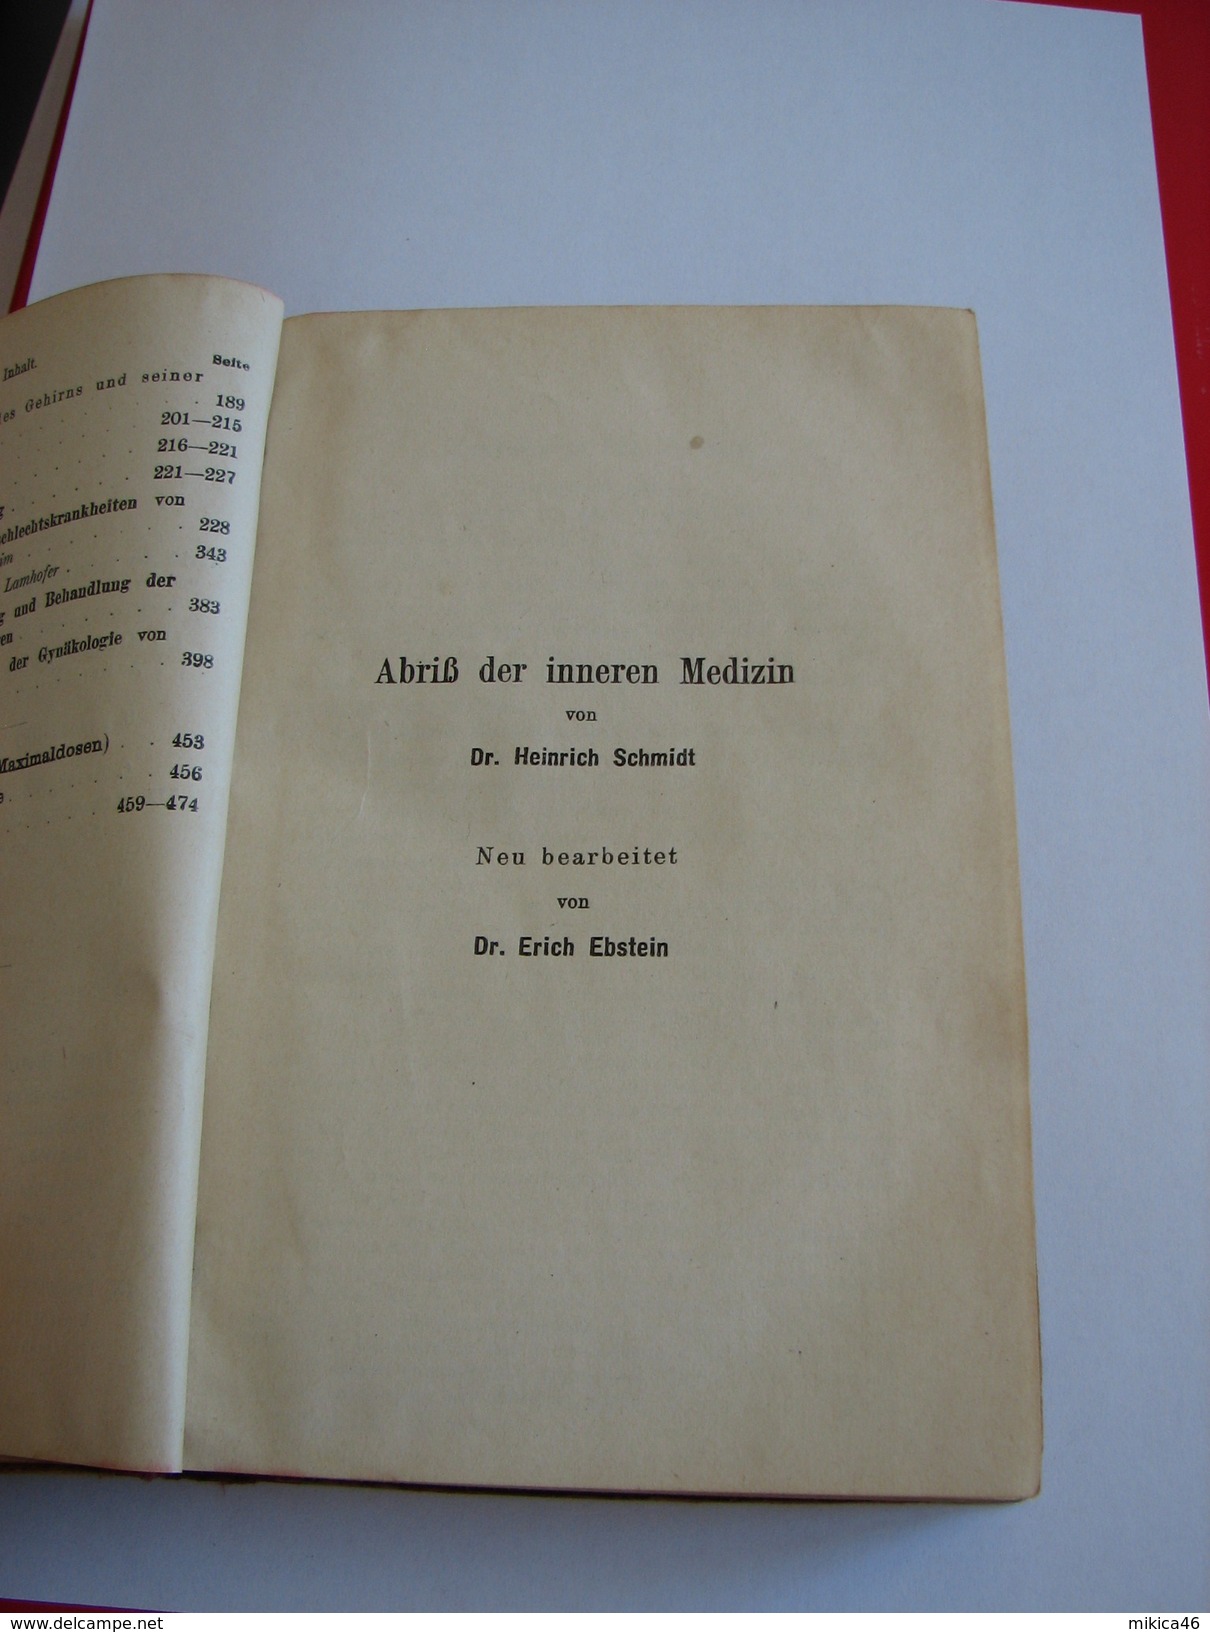 Diagnostisch-therapeutisches Vademecum Für Studierende Und Ärzte - Schmidt, Heinrich U. A. - 1918 - Old Books